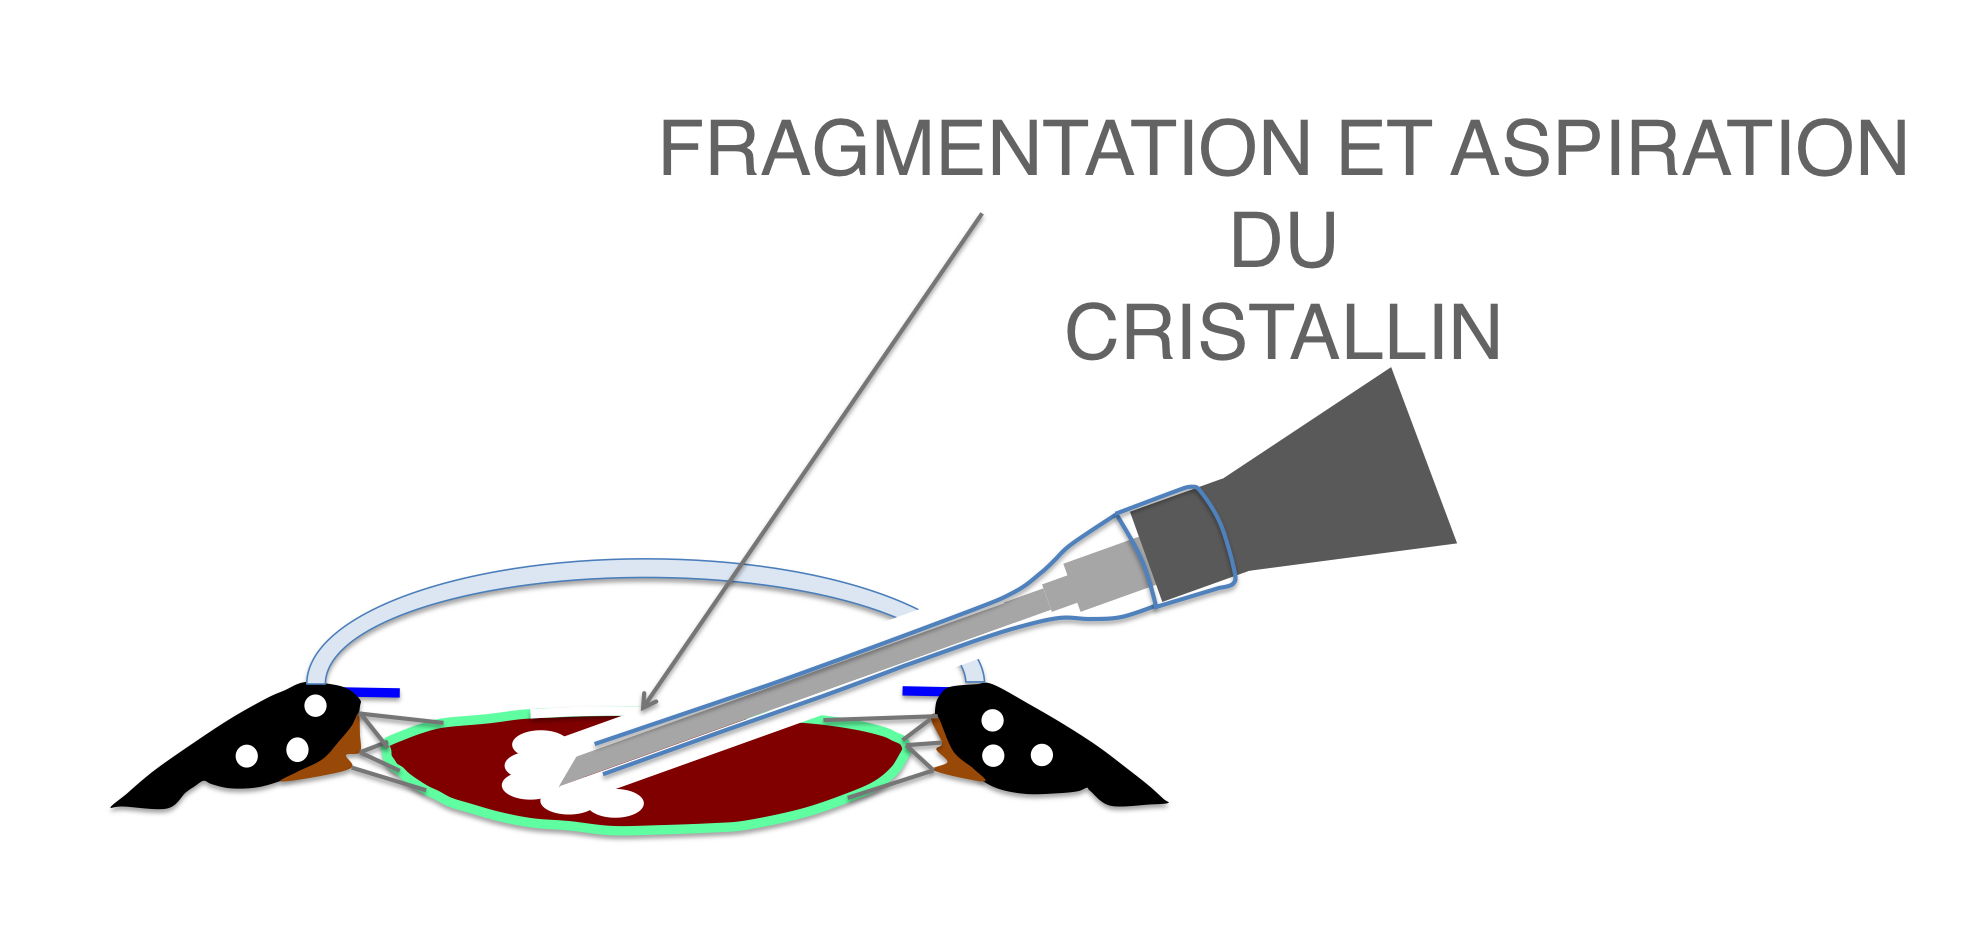 fragmentation par ultrasons et aspiration en cours du cristallin (phakoémulsification) lors de la chirurgie de cataracte